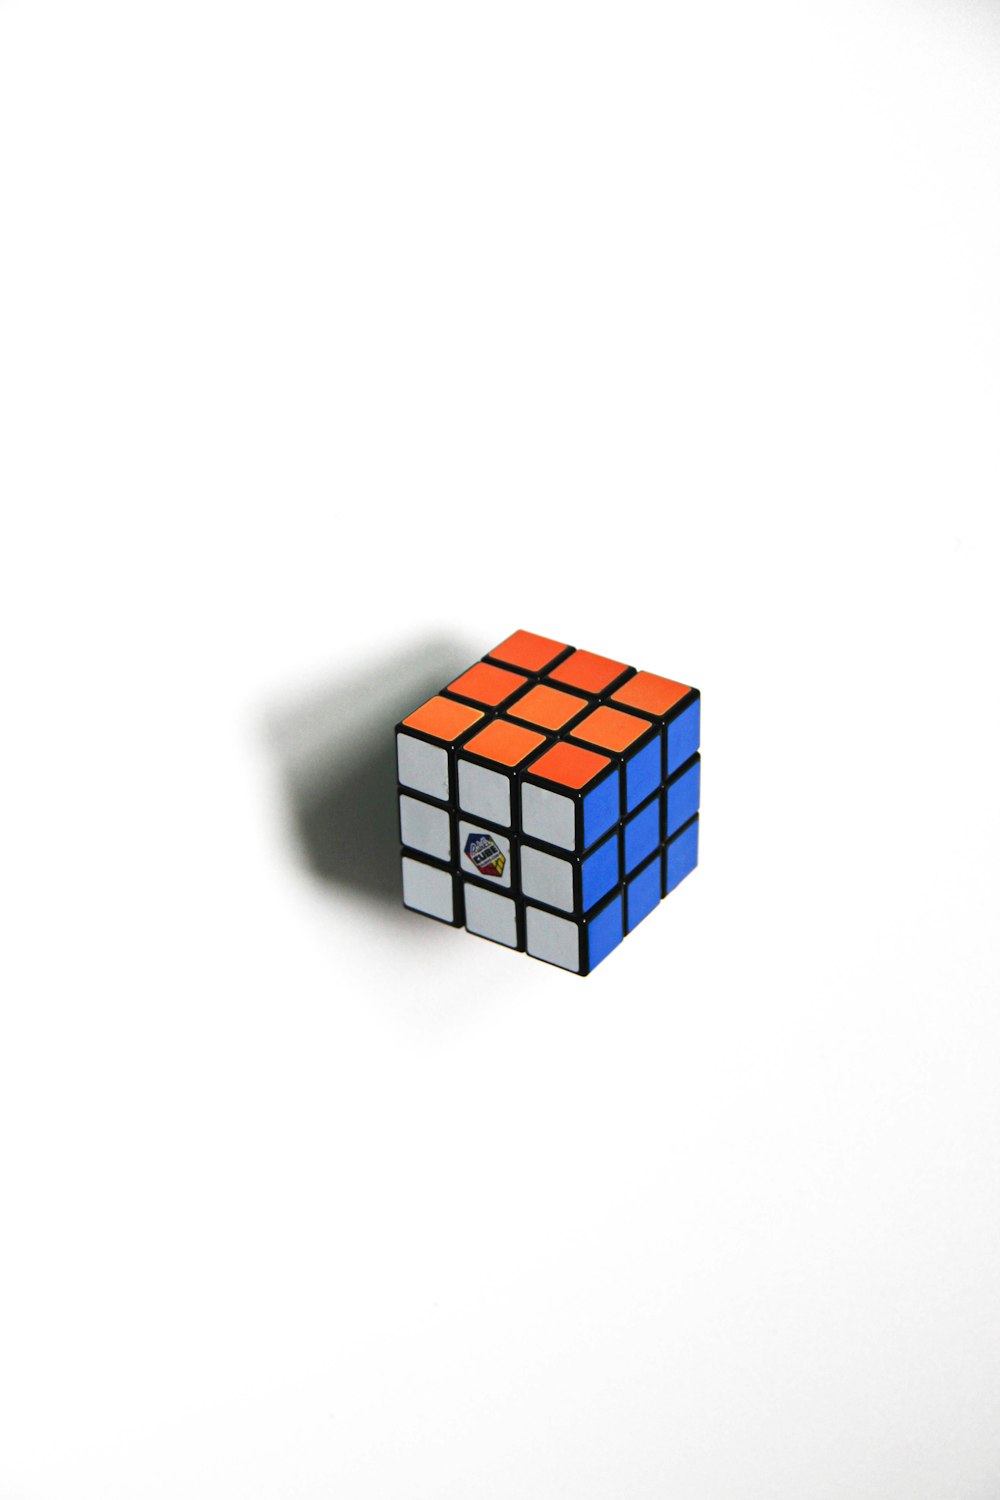 3 x 3 cubo mágico